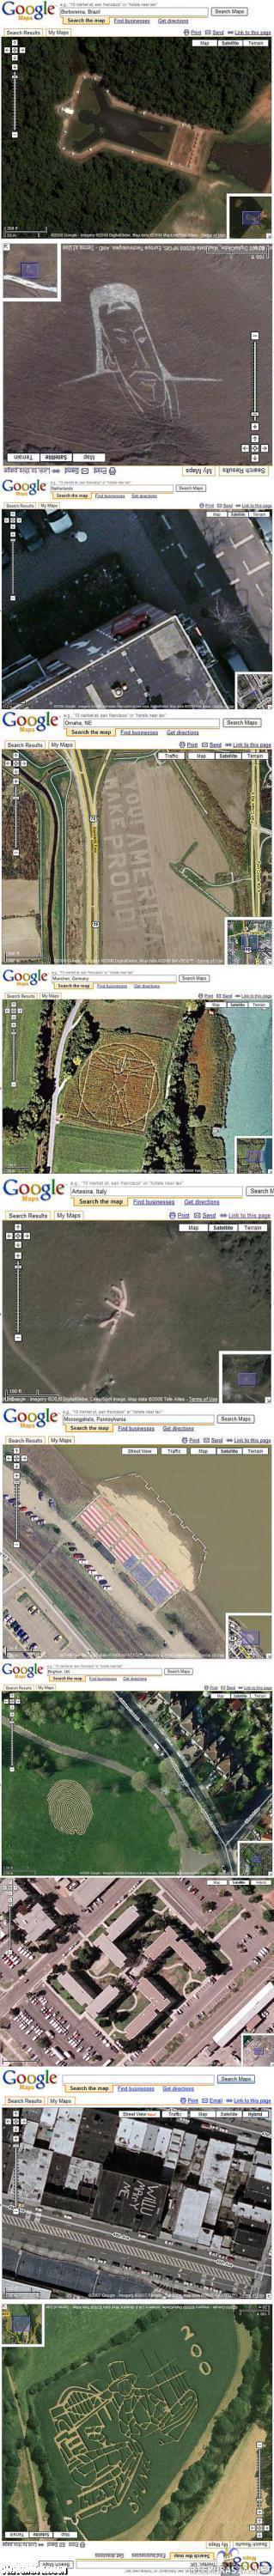 Google mapsista poimittuja  - hienoi